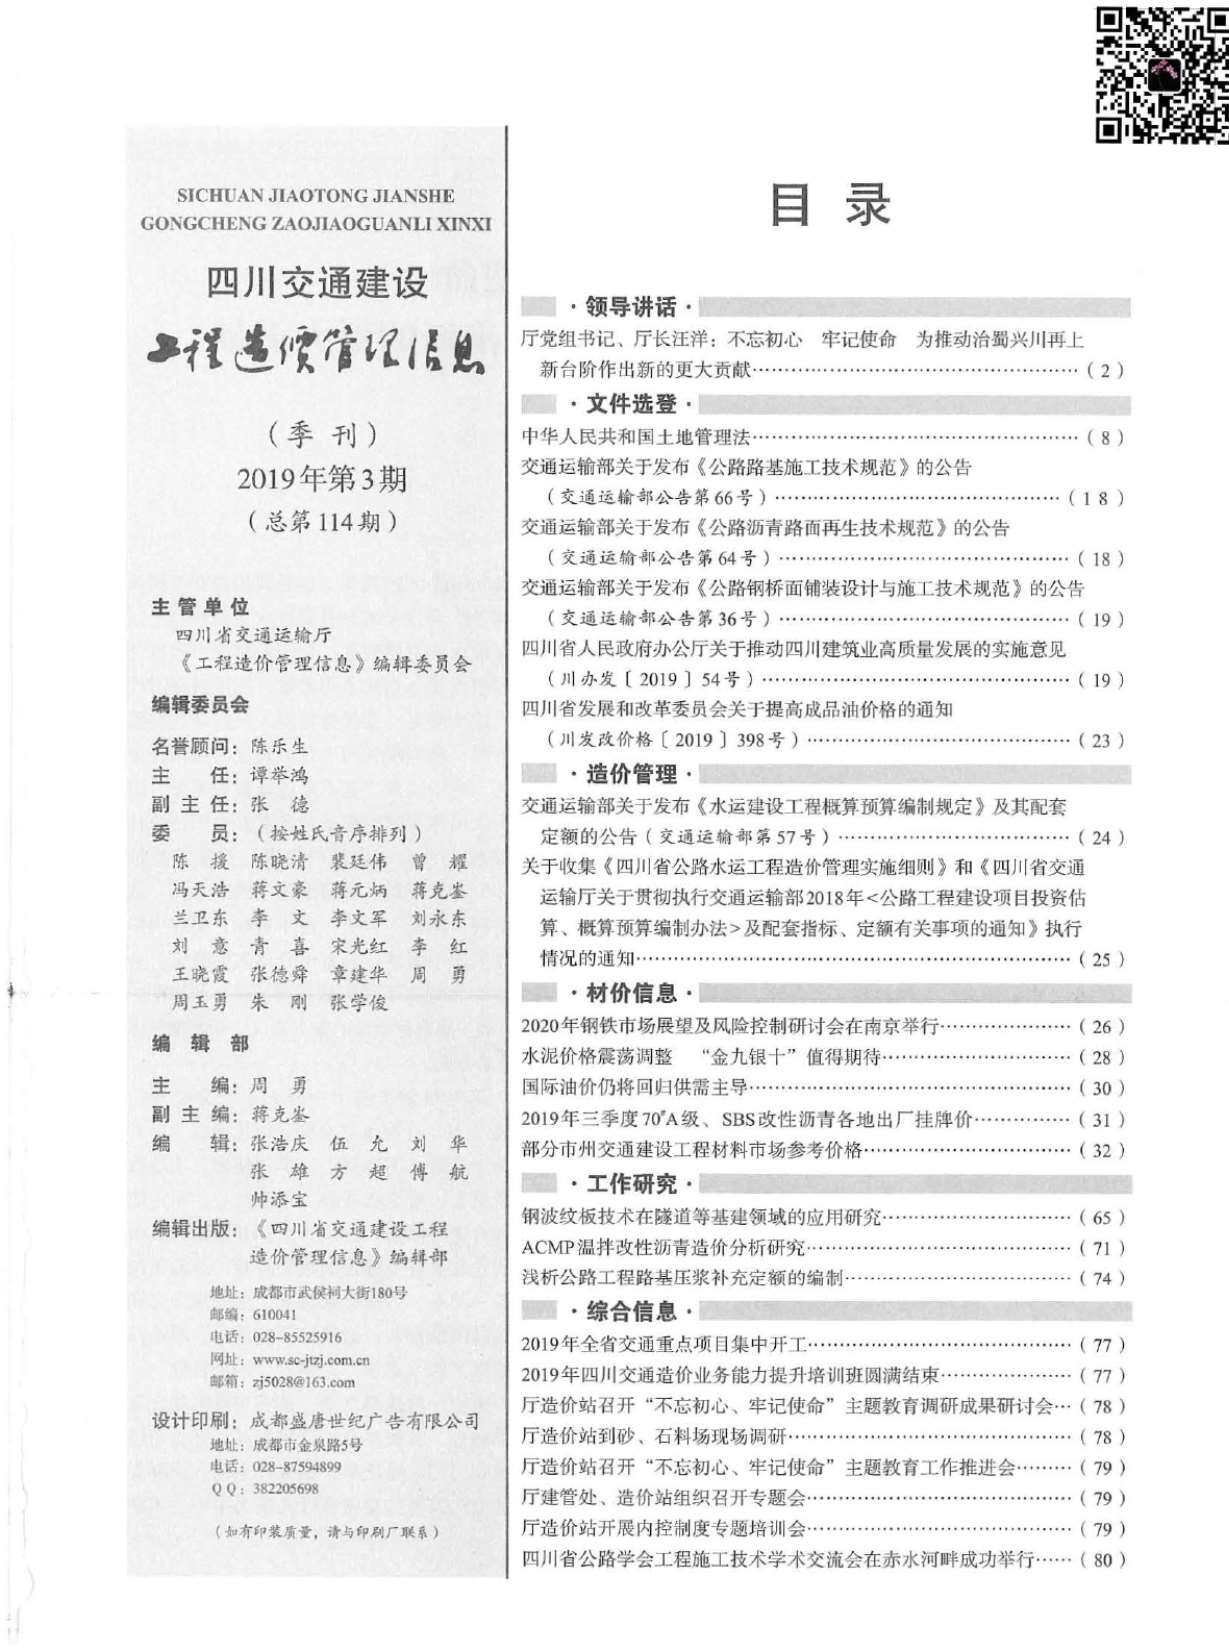 2019年3期四川省交通交通工程造价信息期刊